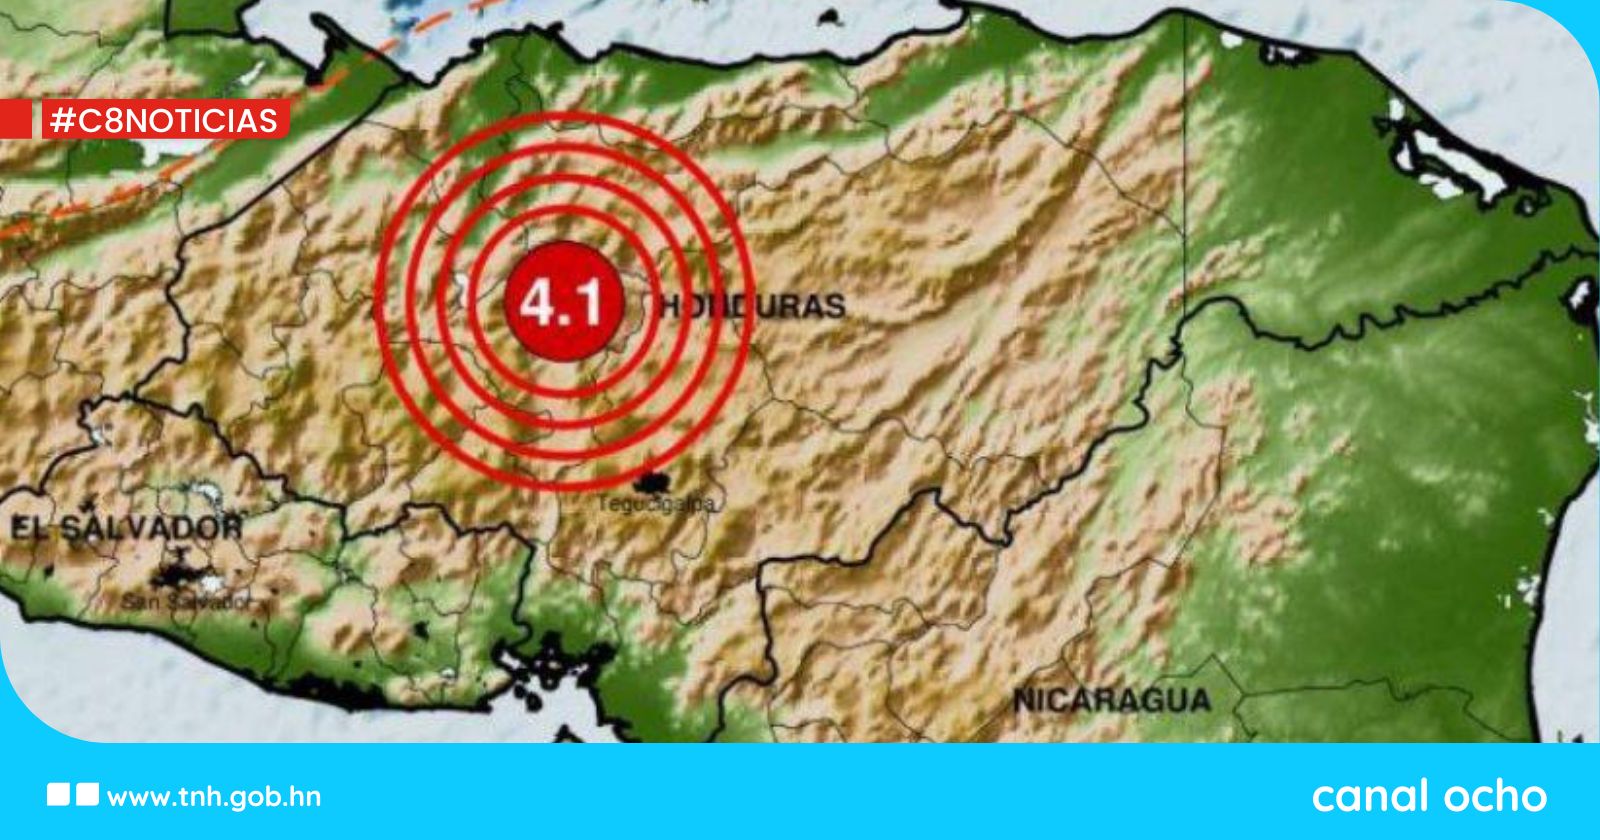 Honduras ha reportado 46 sismos, confirma Cenaos